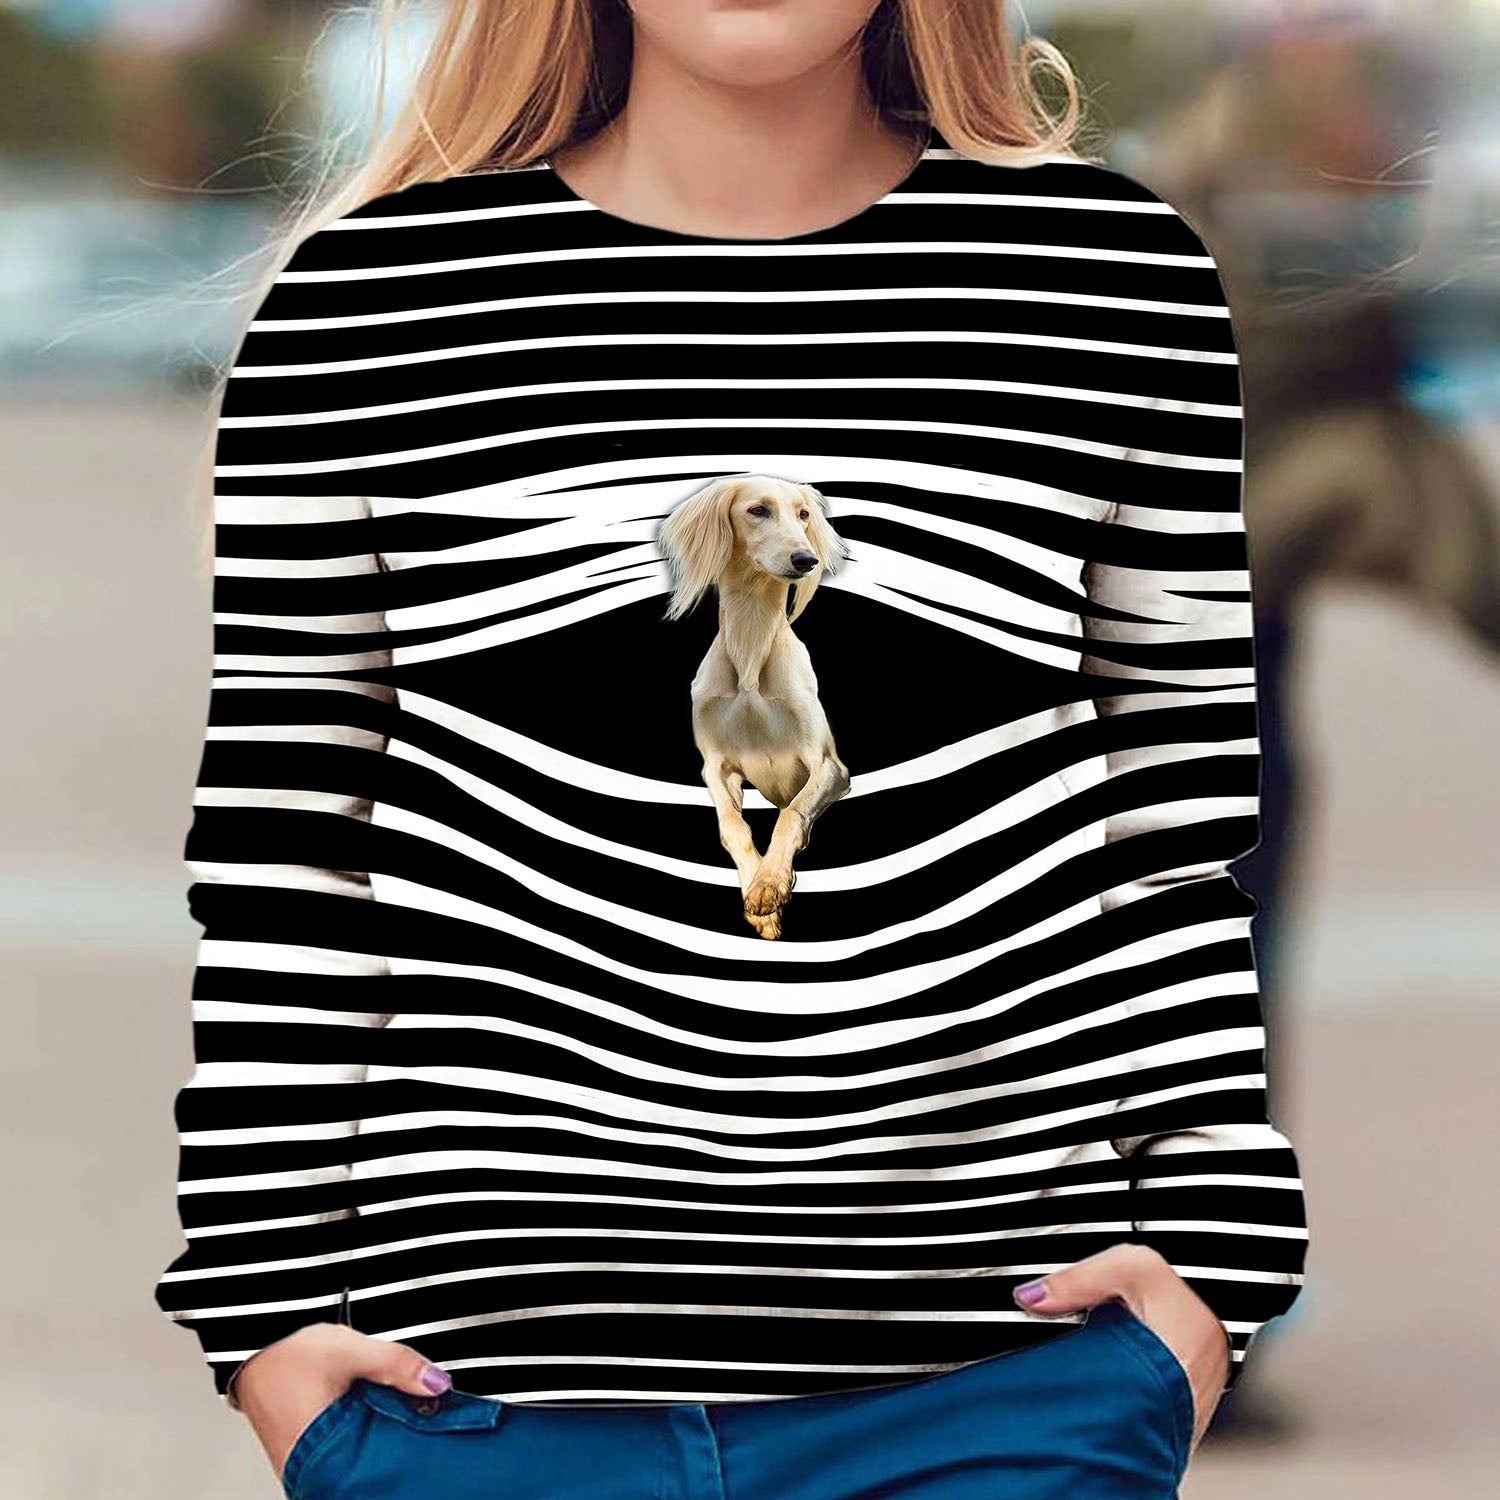 Sighthound - Stripe - Premium Sweater